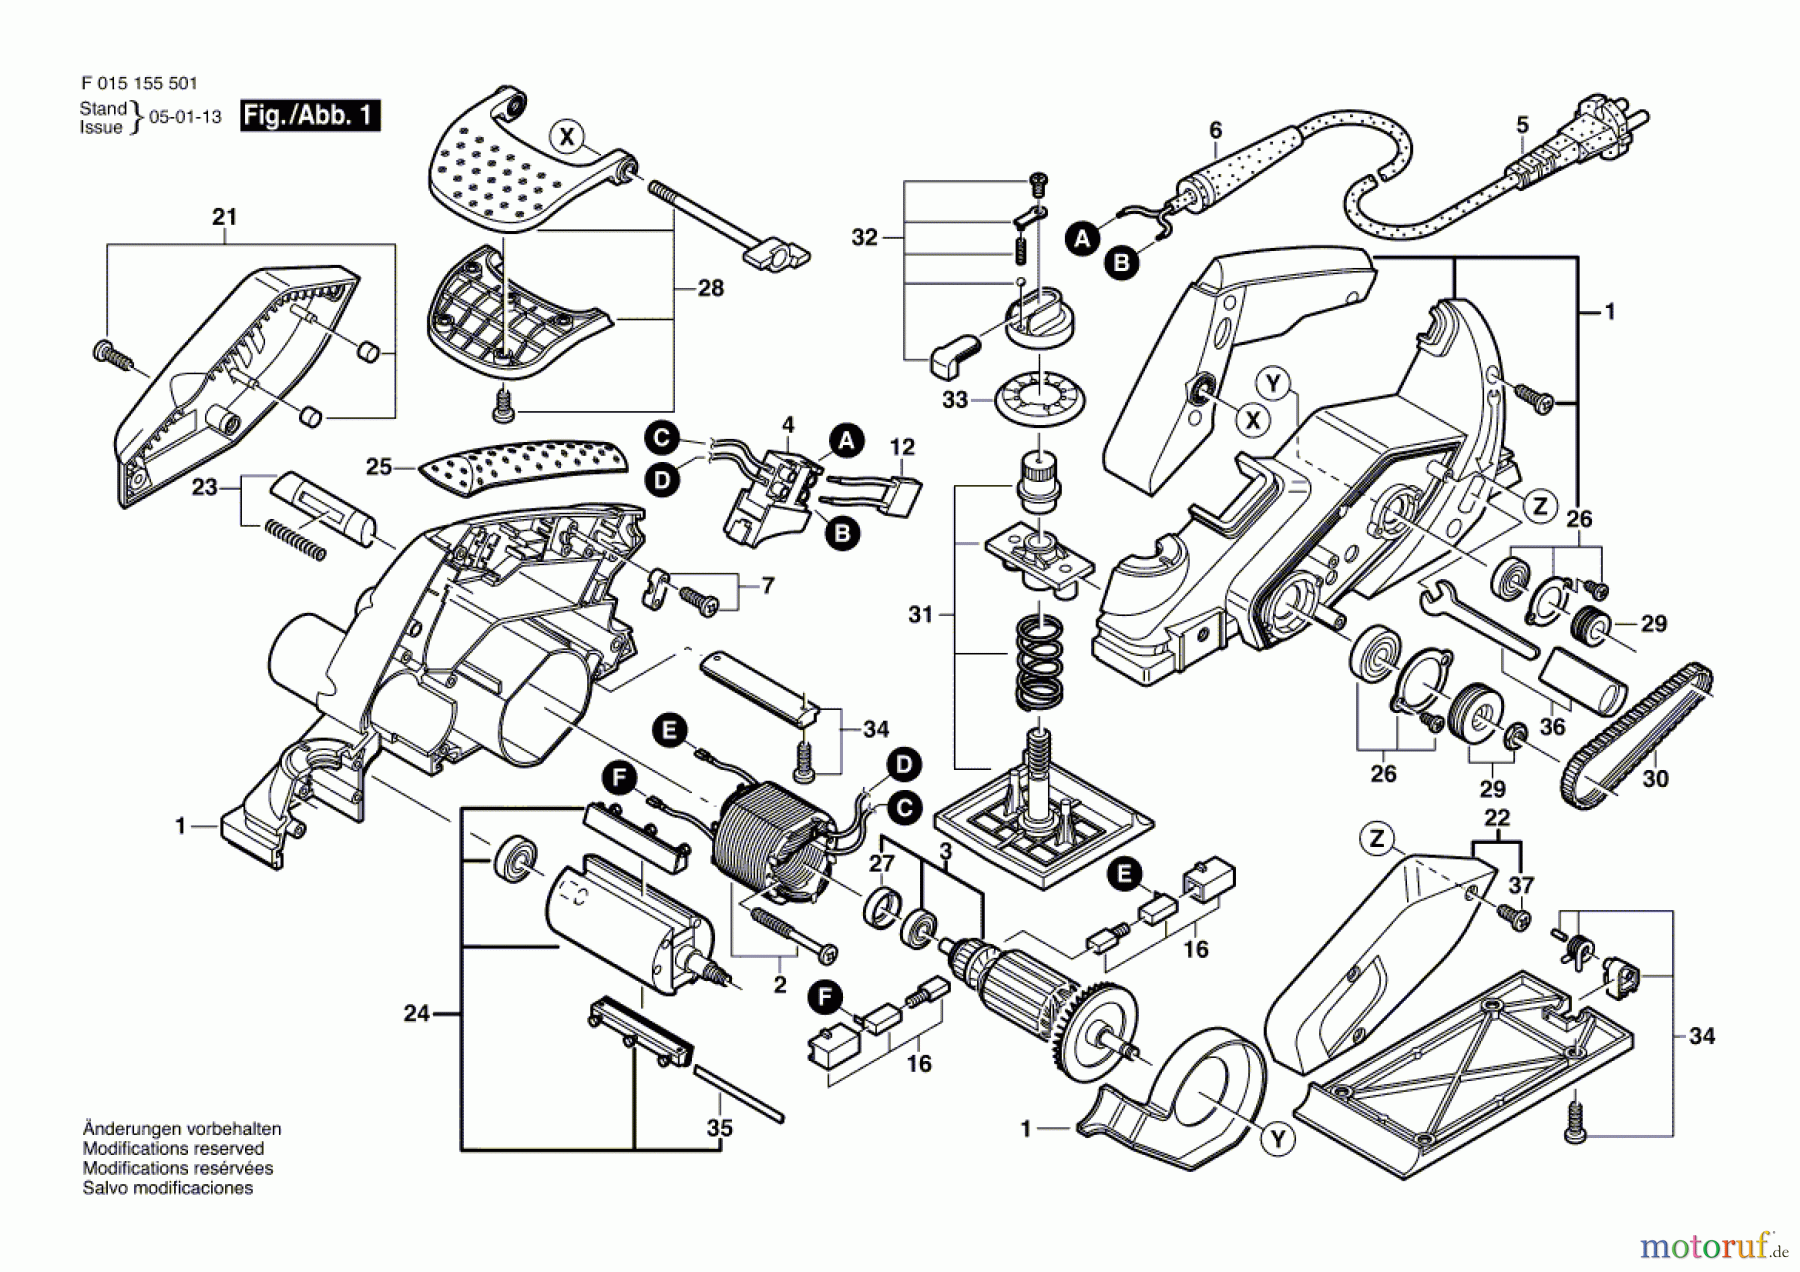  Bosch Werkzeug Handhobel 1555 Seite 1